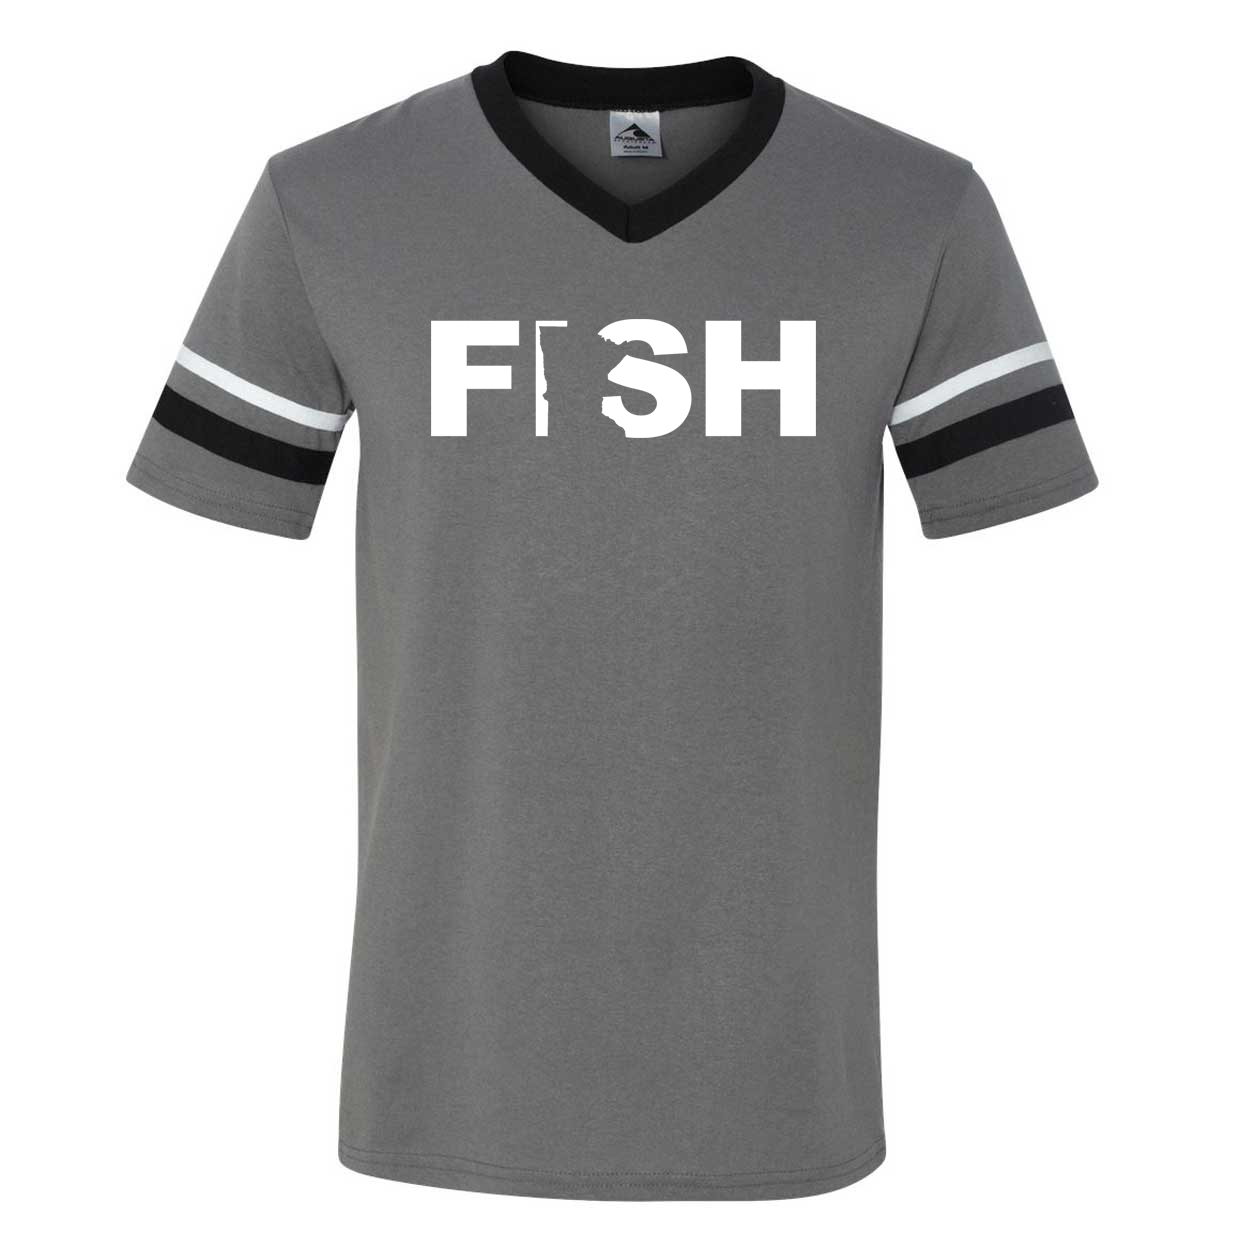 Fish Minnesota Classic Premium Striped Jersey T-Shirt Graphite/Black/White (White Logo)